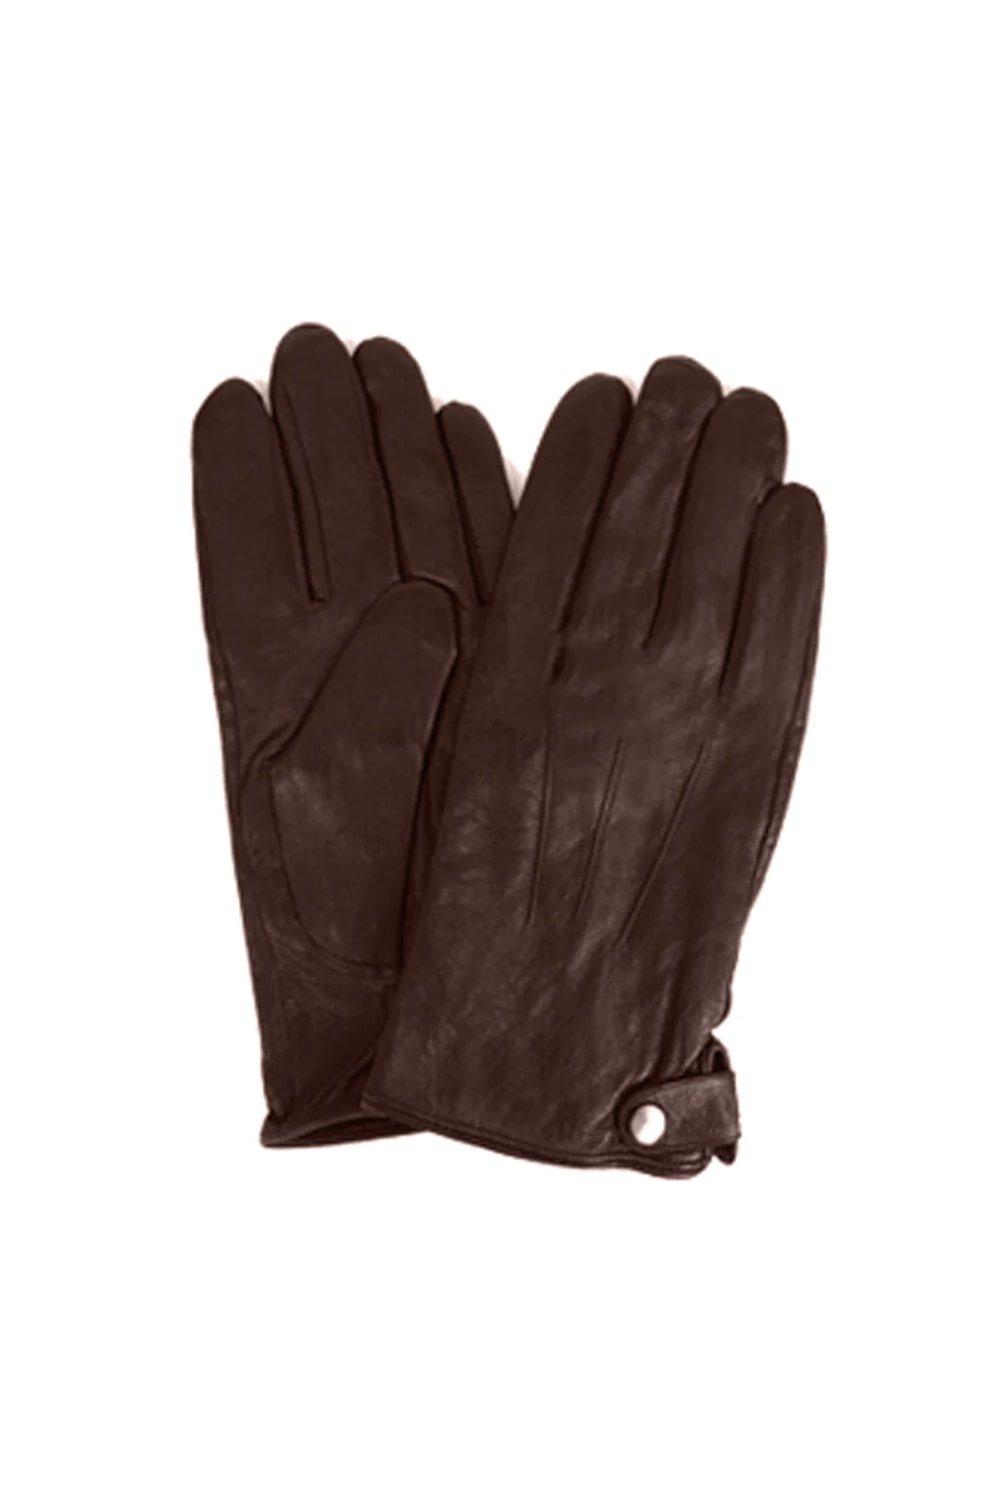 Классические кожаные зимние перчатки Eastern Counties Leather, коричневый классические кожаные зимние перчатки eastern counties leather коричневый